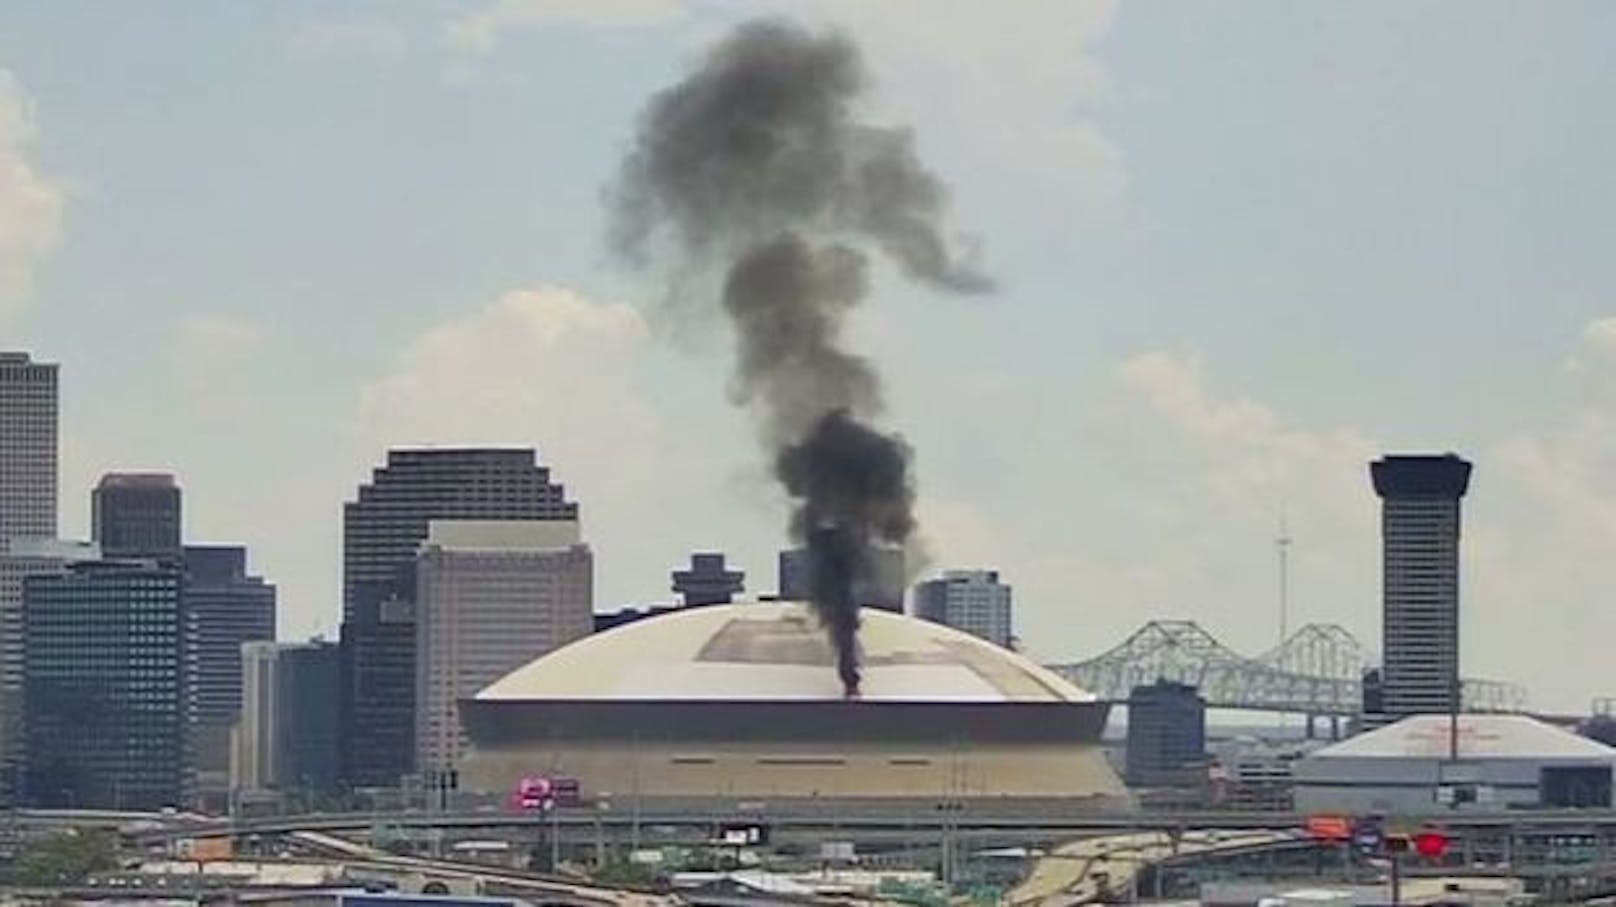 Der Super Dome ine New Orleans ist in Brand geraten. 